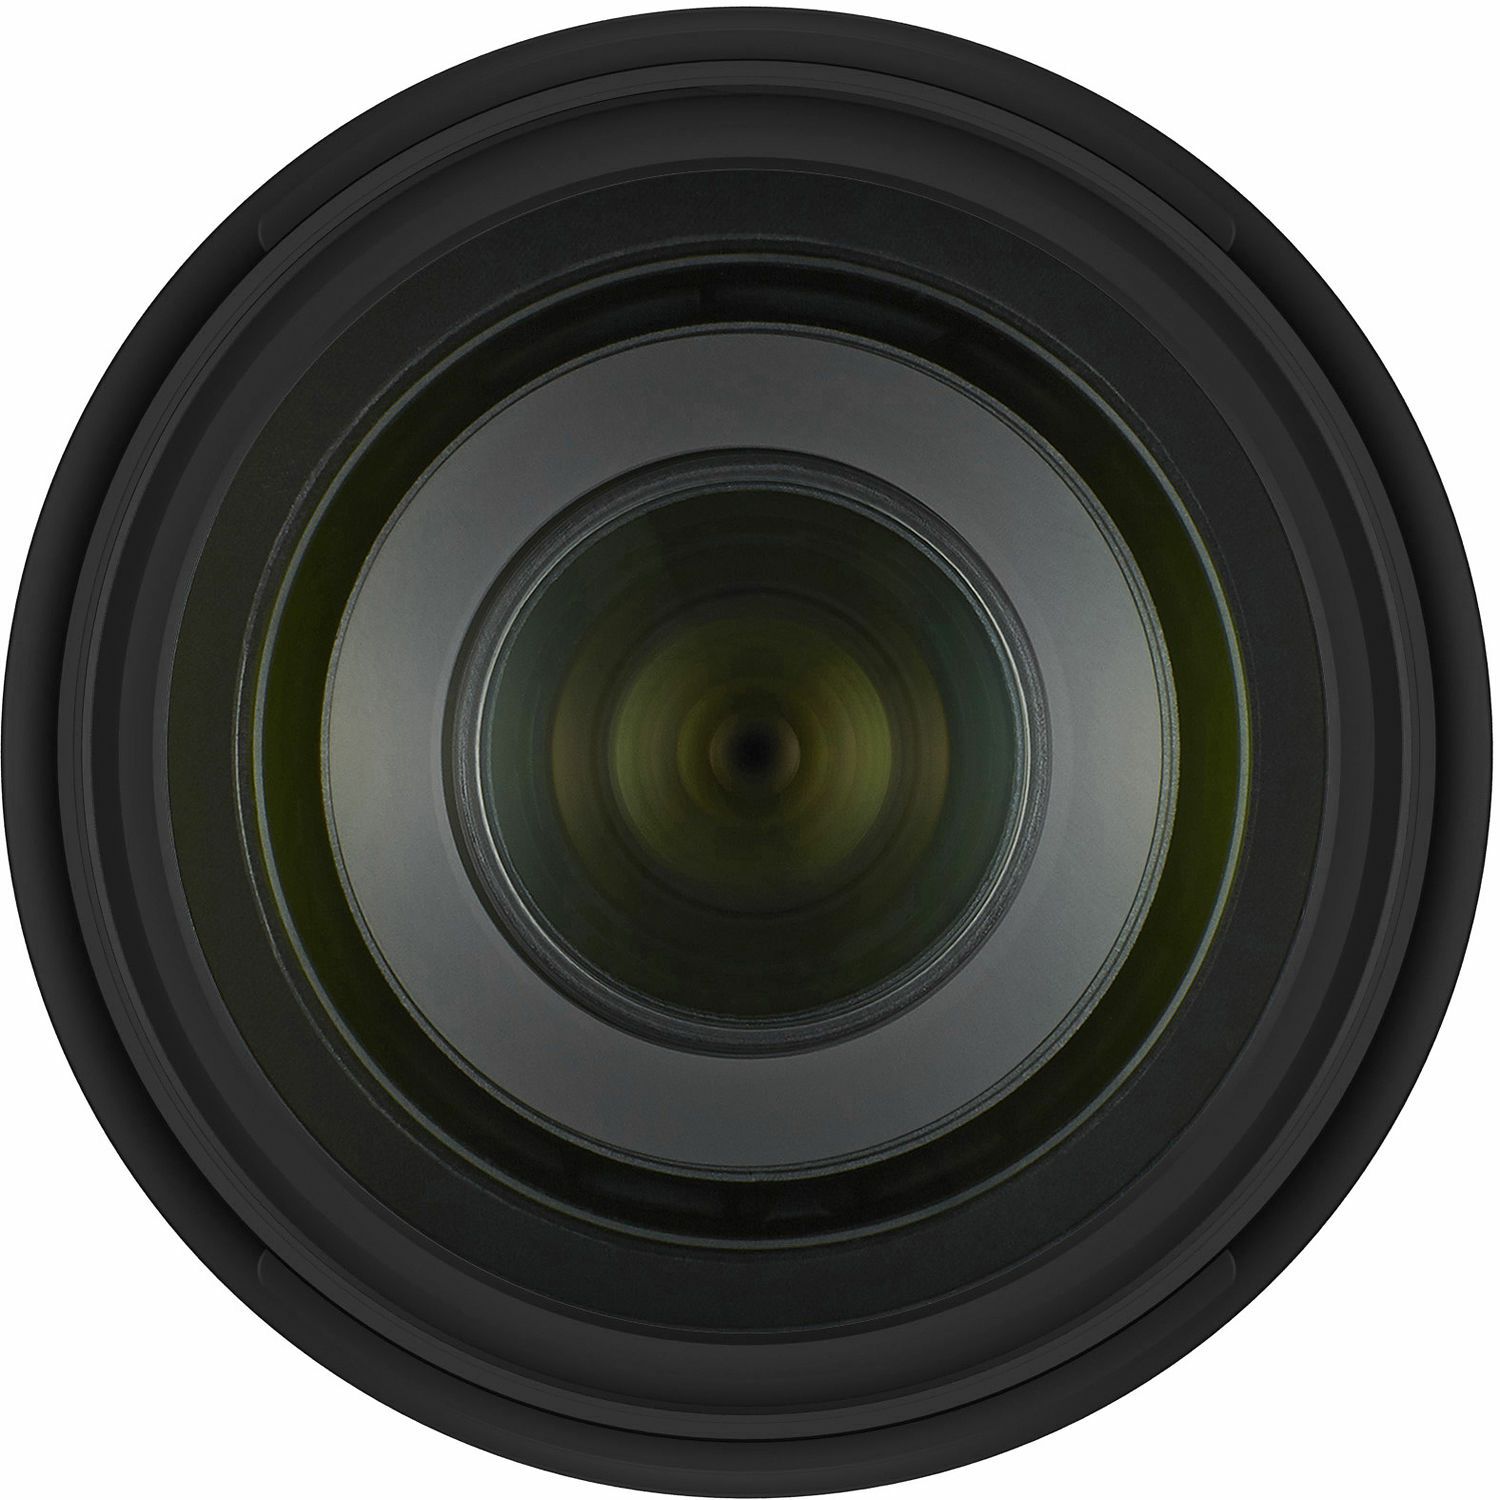 Tamron 70-210mm f/4 Di VC USD telefoto objektiv za Nikon FX (A034N)